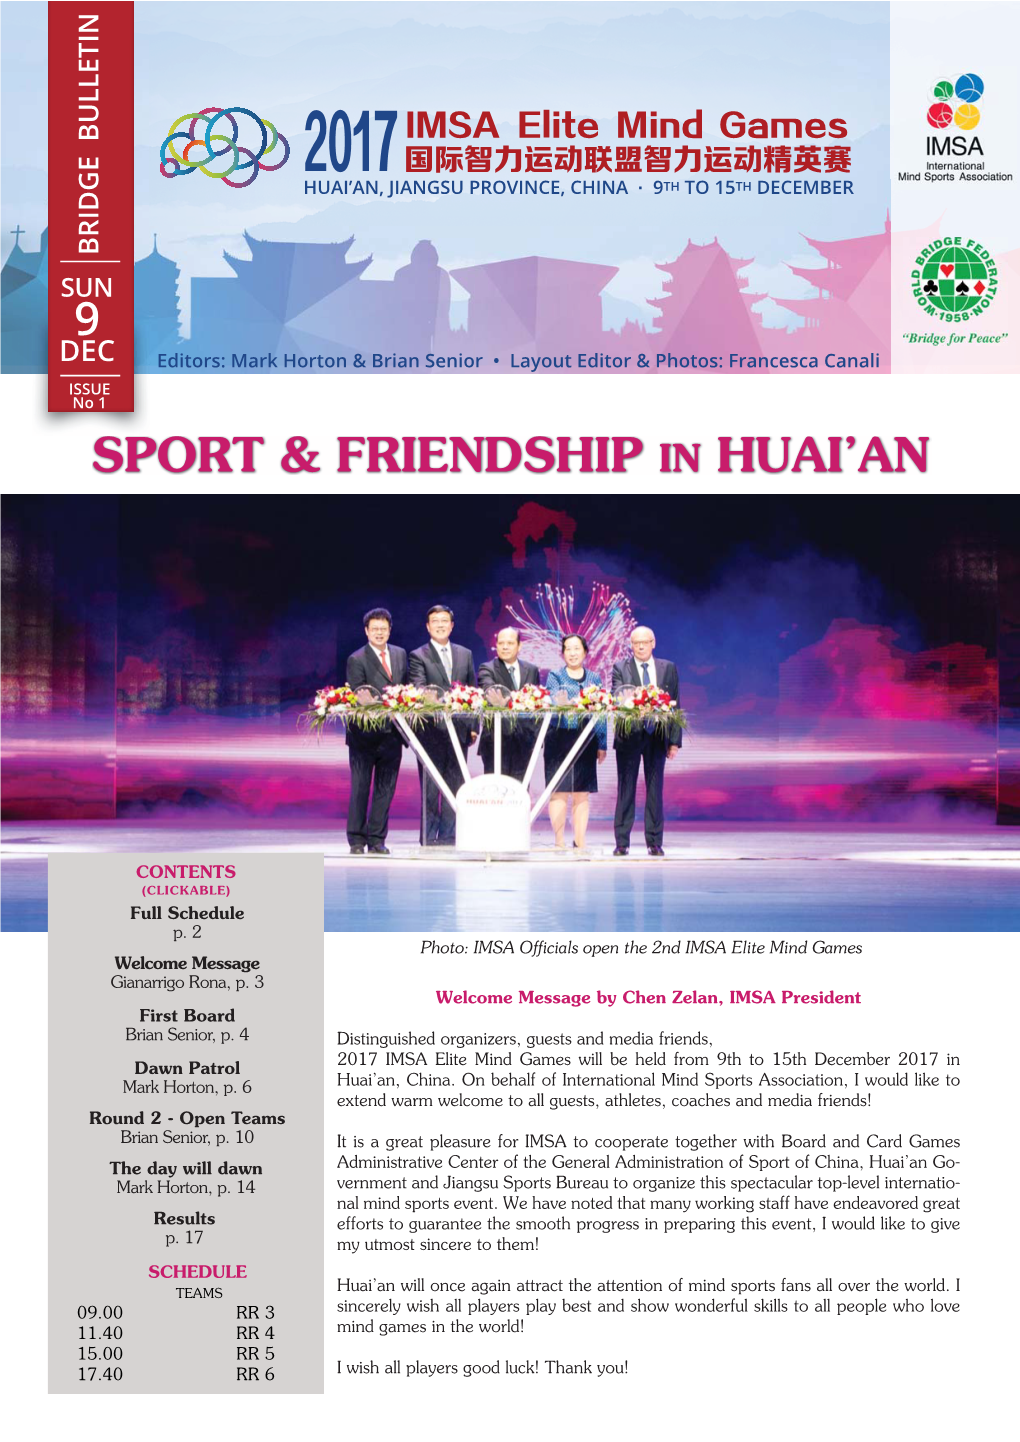 Sport & Friendship in Huai'an